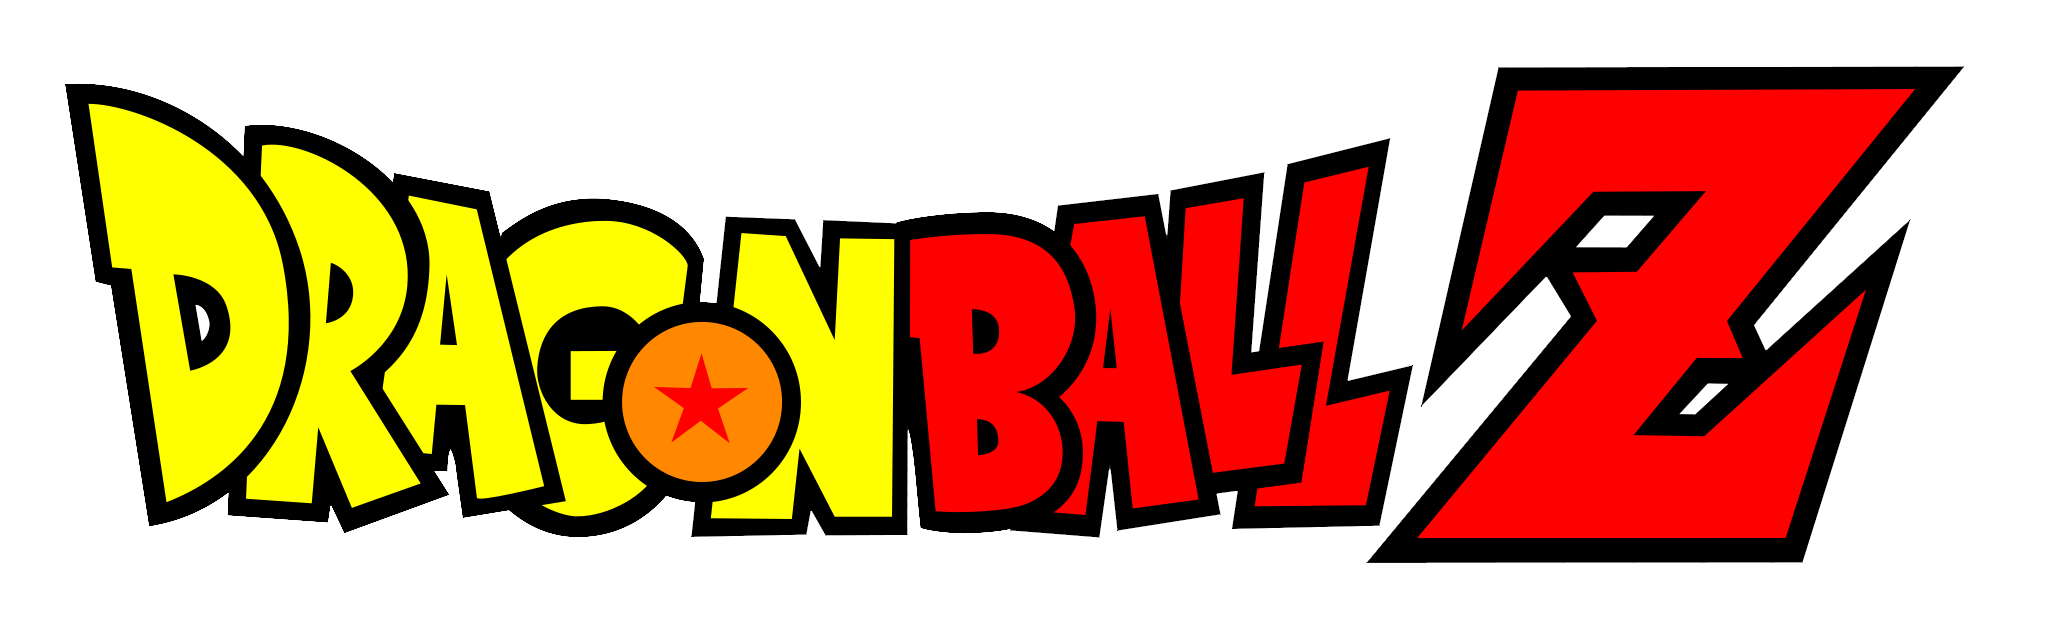 Dragon Ball Z Logo - Dragon Ball Z Logo 2 image